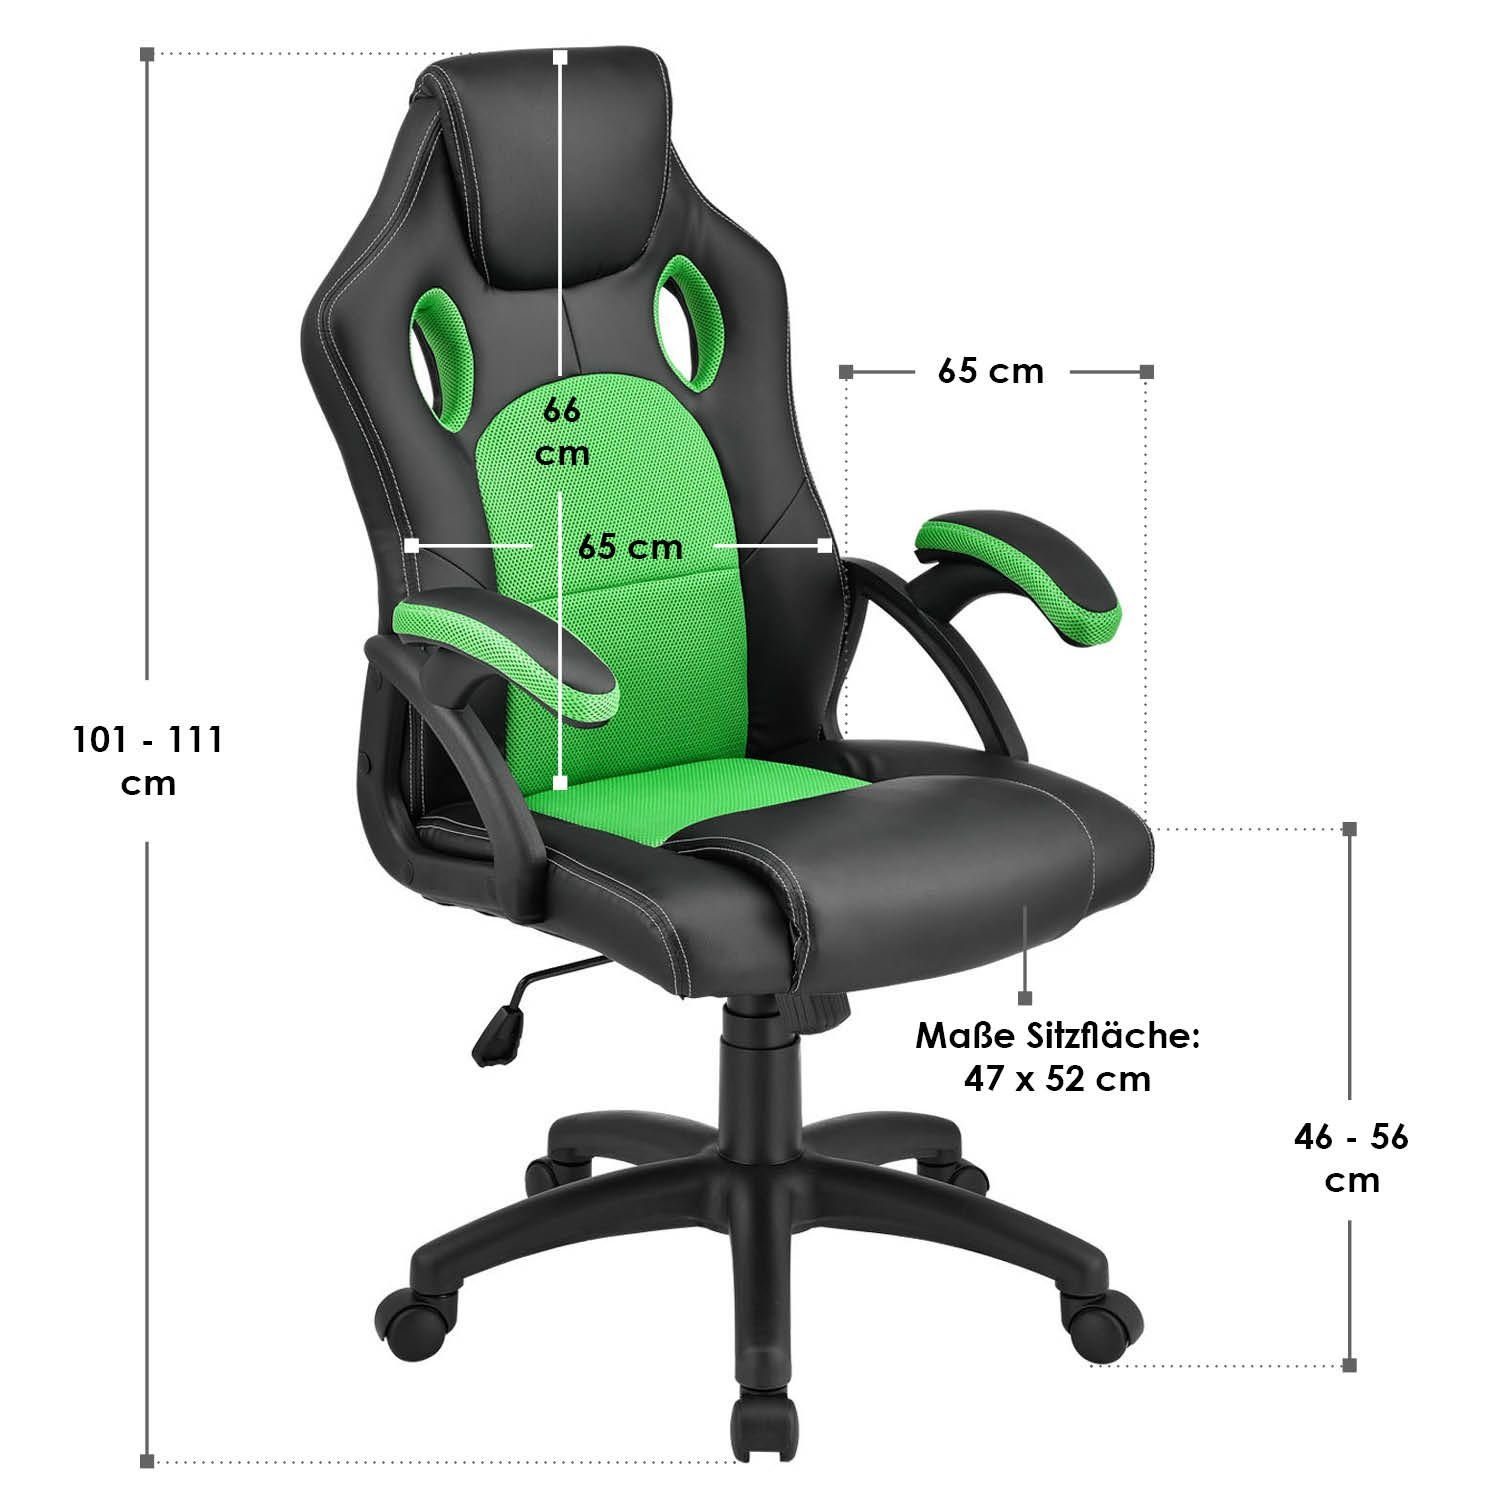 Juskys Gaming-Stuhl Montreal, Ergonomisch Sitzfläche, Grün und Schwarz, kippbar Rückenlehne geformte Sitzfläche